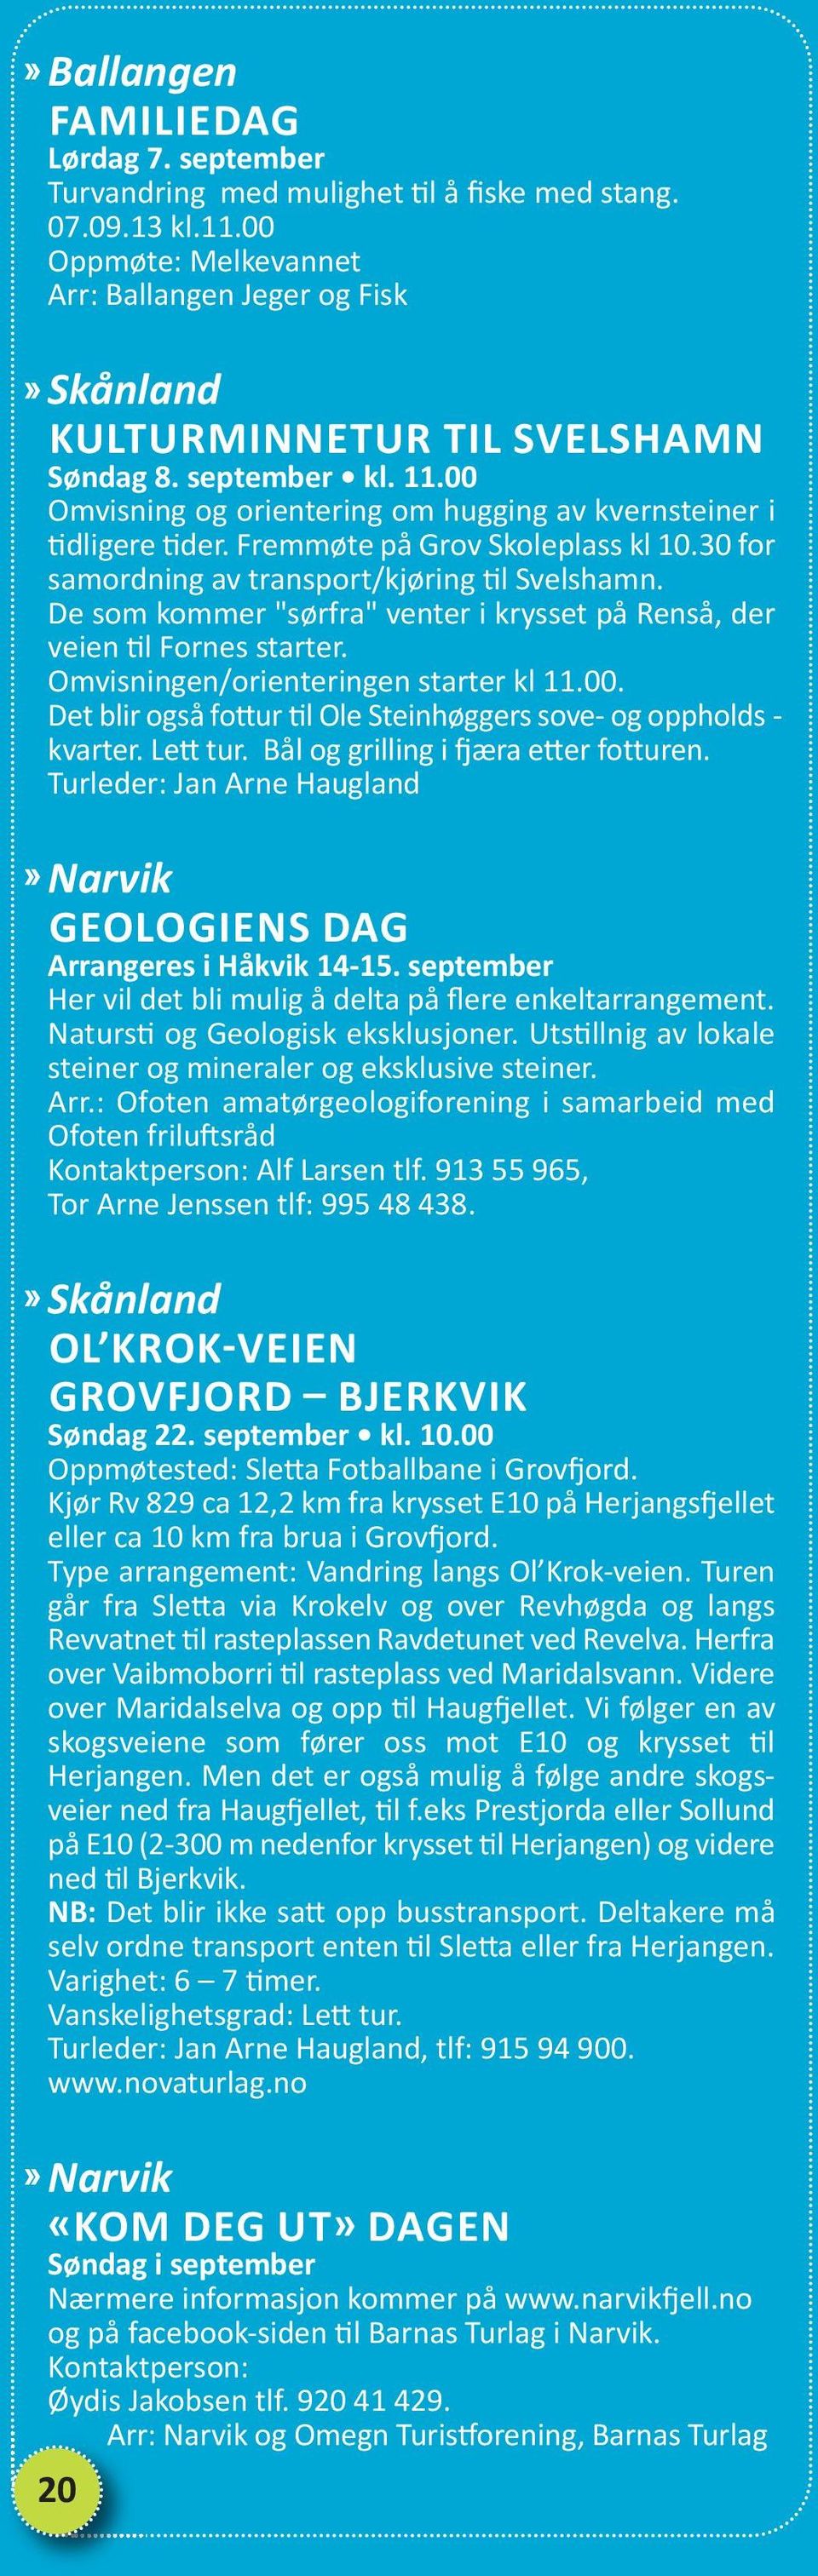 Fremmøte på Grov Skoleplass kl 10.30 for samordning av transport/kjøring til Svelshamn. De som kommer "sørfra" venter i krysset på Renså, der veien til Fornes starter.